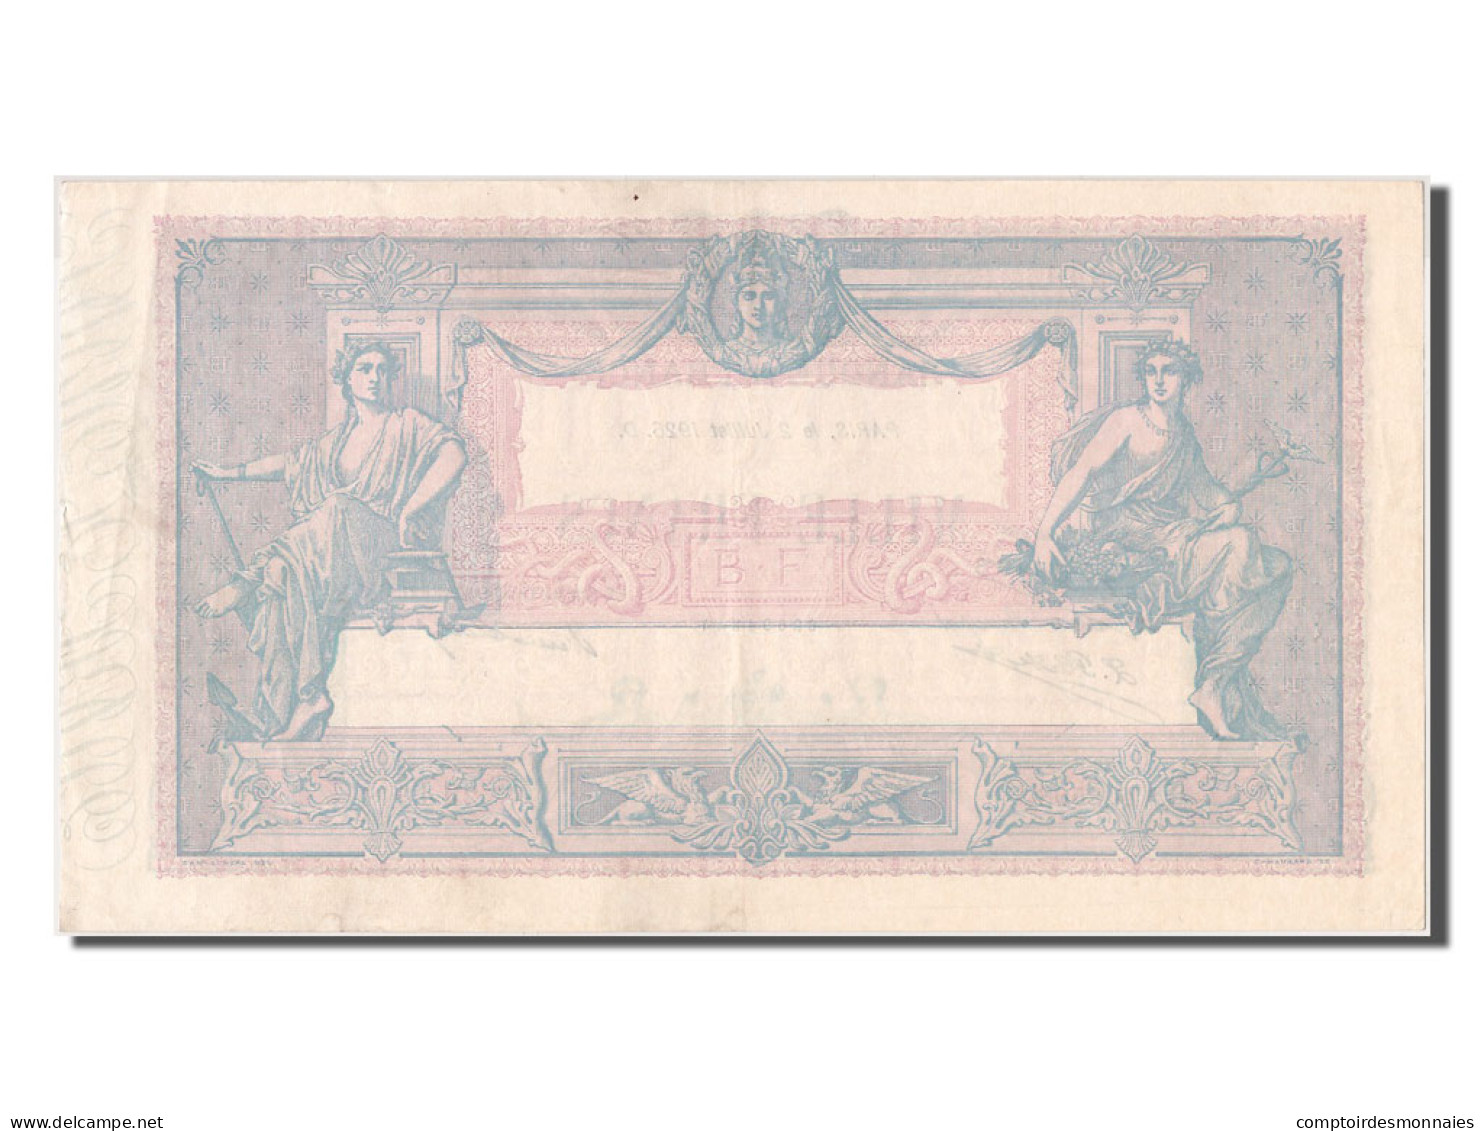 Billet, France, 1000 Francs, ...-1889 Circulated During XIXth, 1926, 1926-07-02 - ...-1889 Anciens Francs Circulés Au XIXème